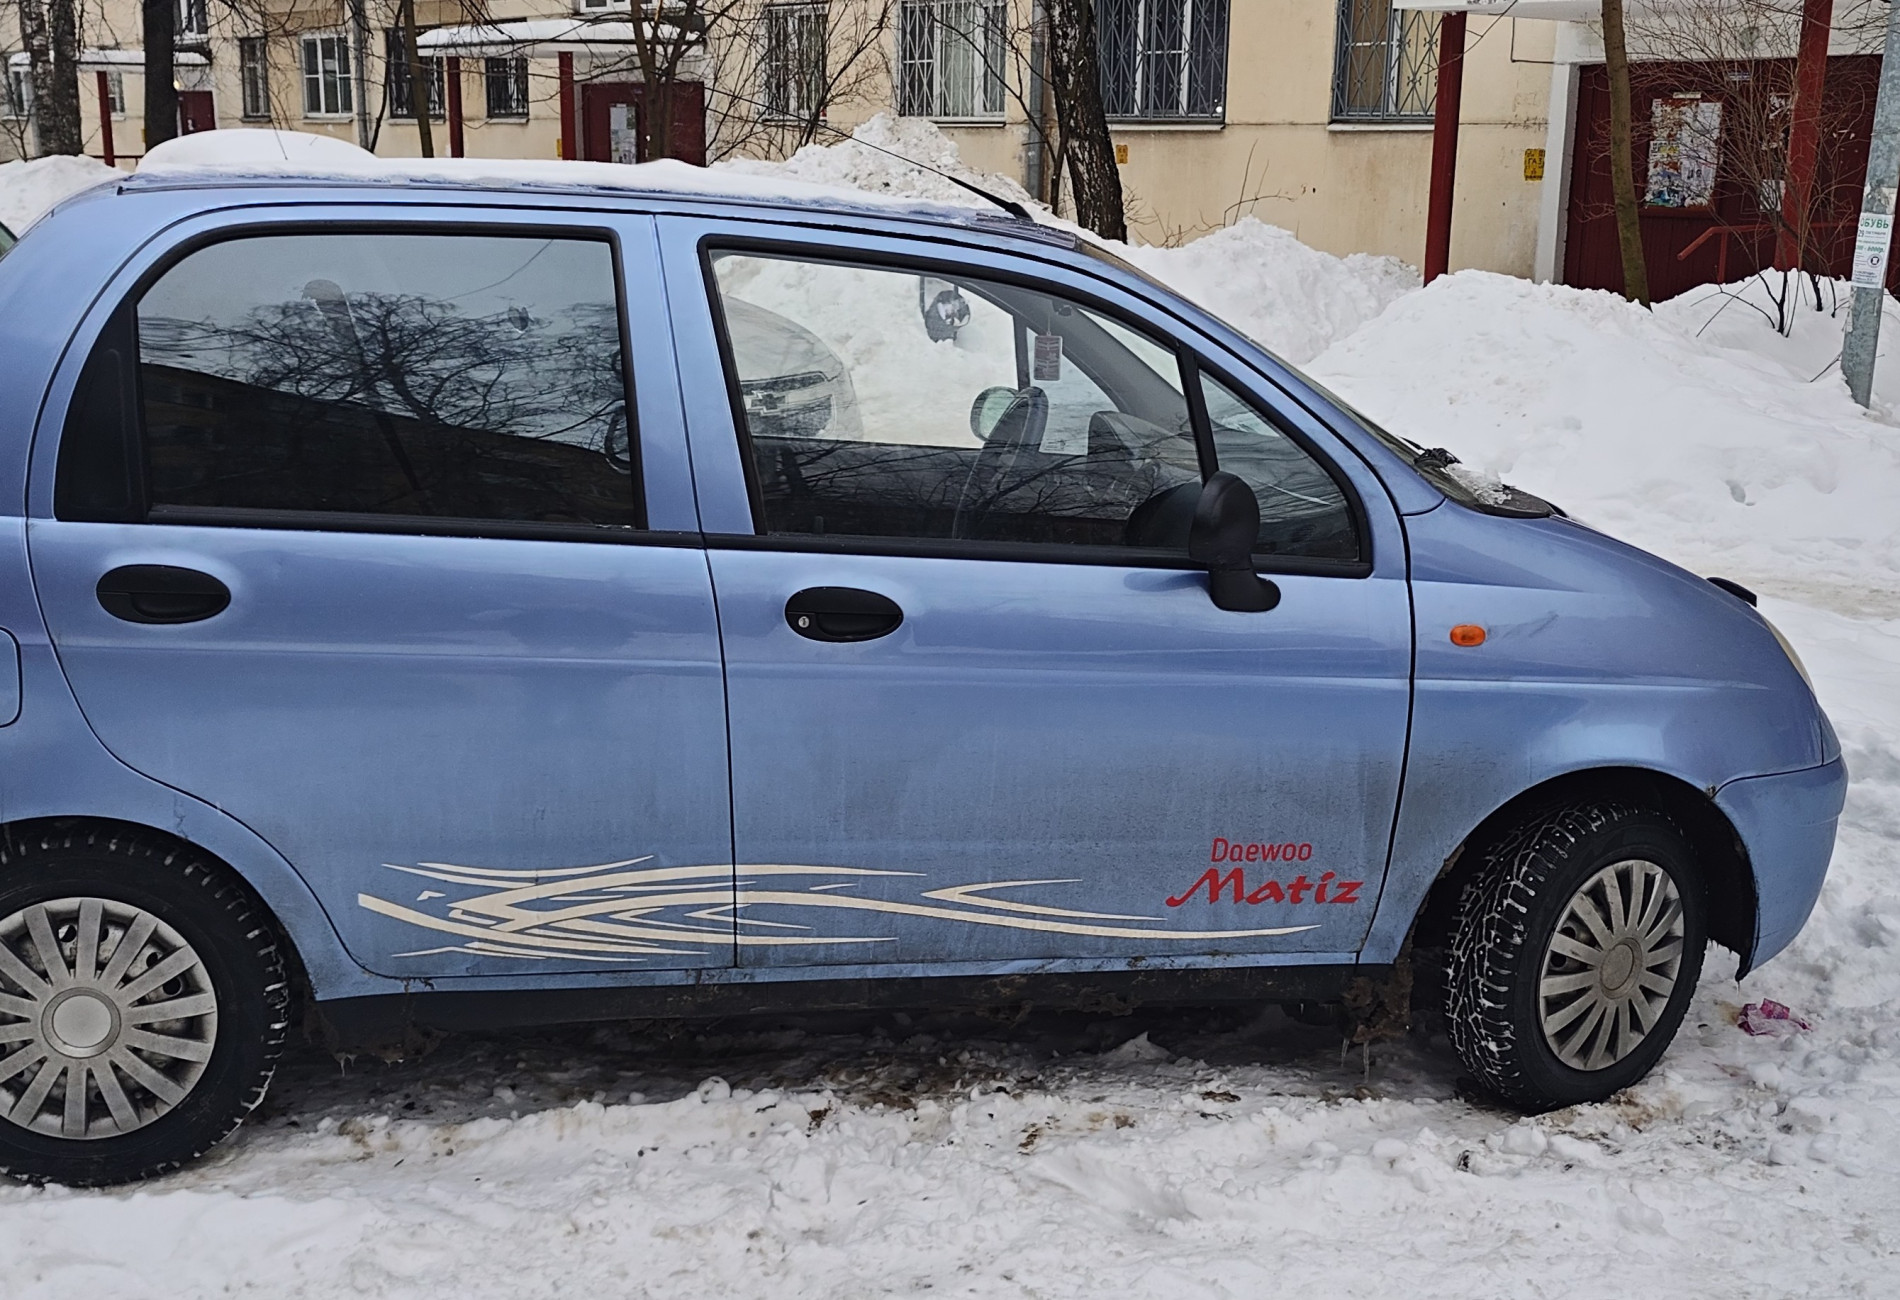 Аренда daewoo matiz эконом класса 2007 года в городе Москва от 1000 руб./сутки, передний привод, двигатель: бензин, объем 0.8 литров, ОСАГО (Впишу в полис), без водителя, недорого, вид 3 - RentRide